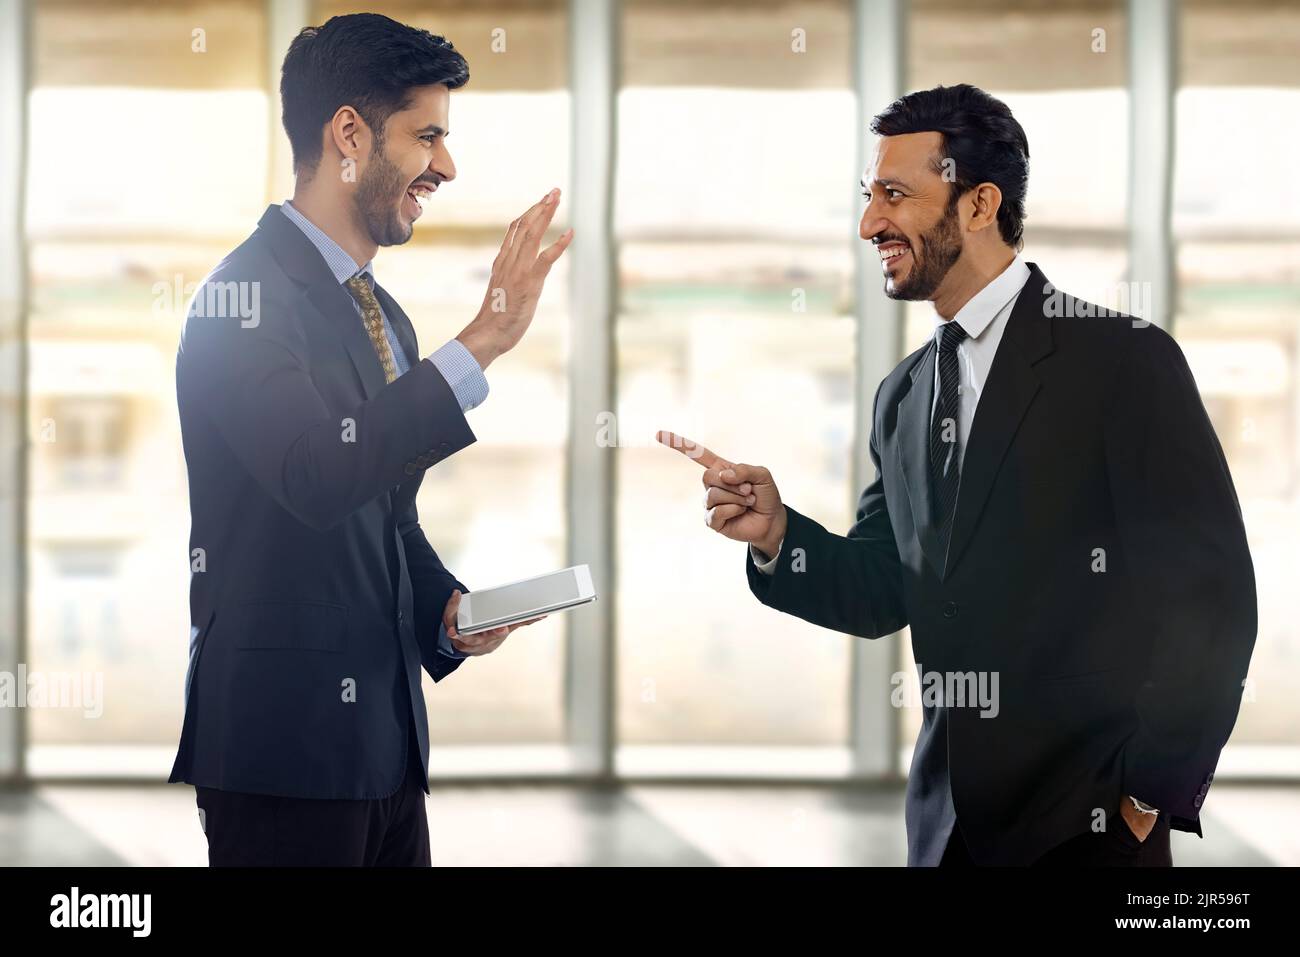 Unternehmensmitarbeiter in formellen Geschäftskleidung reden und lachen mit einem von ihnen, der die digitale Registerkarte hält. Stockfoto